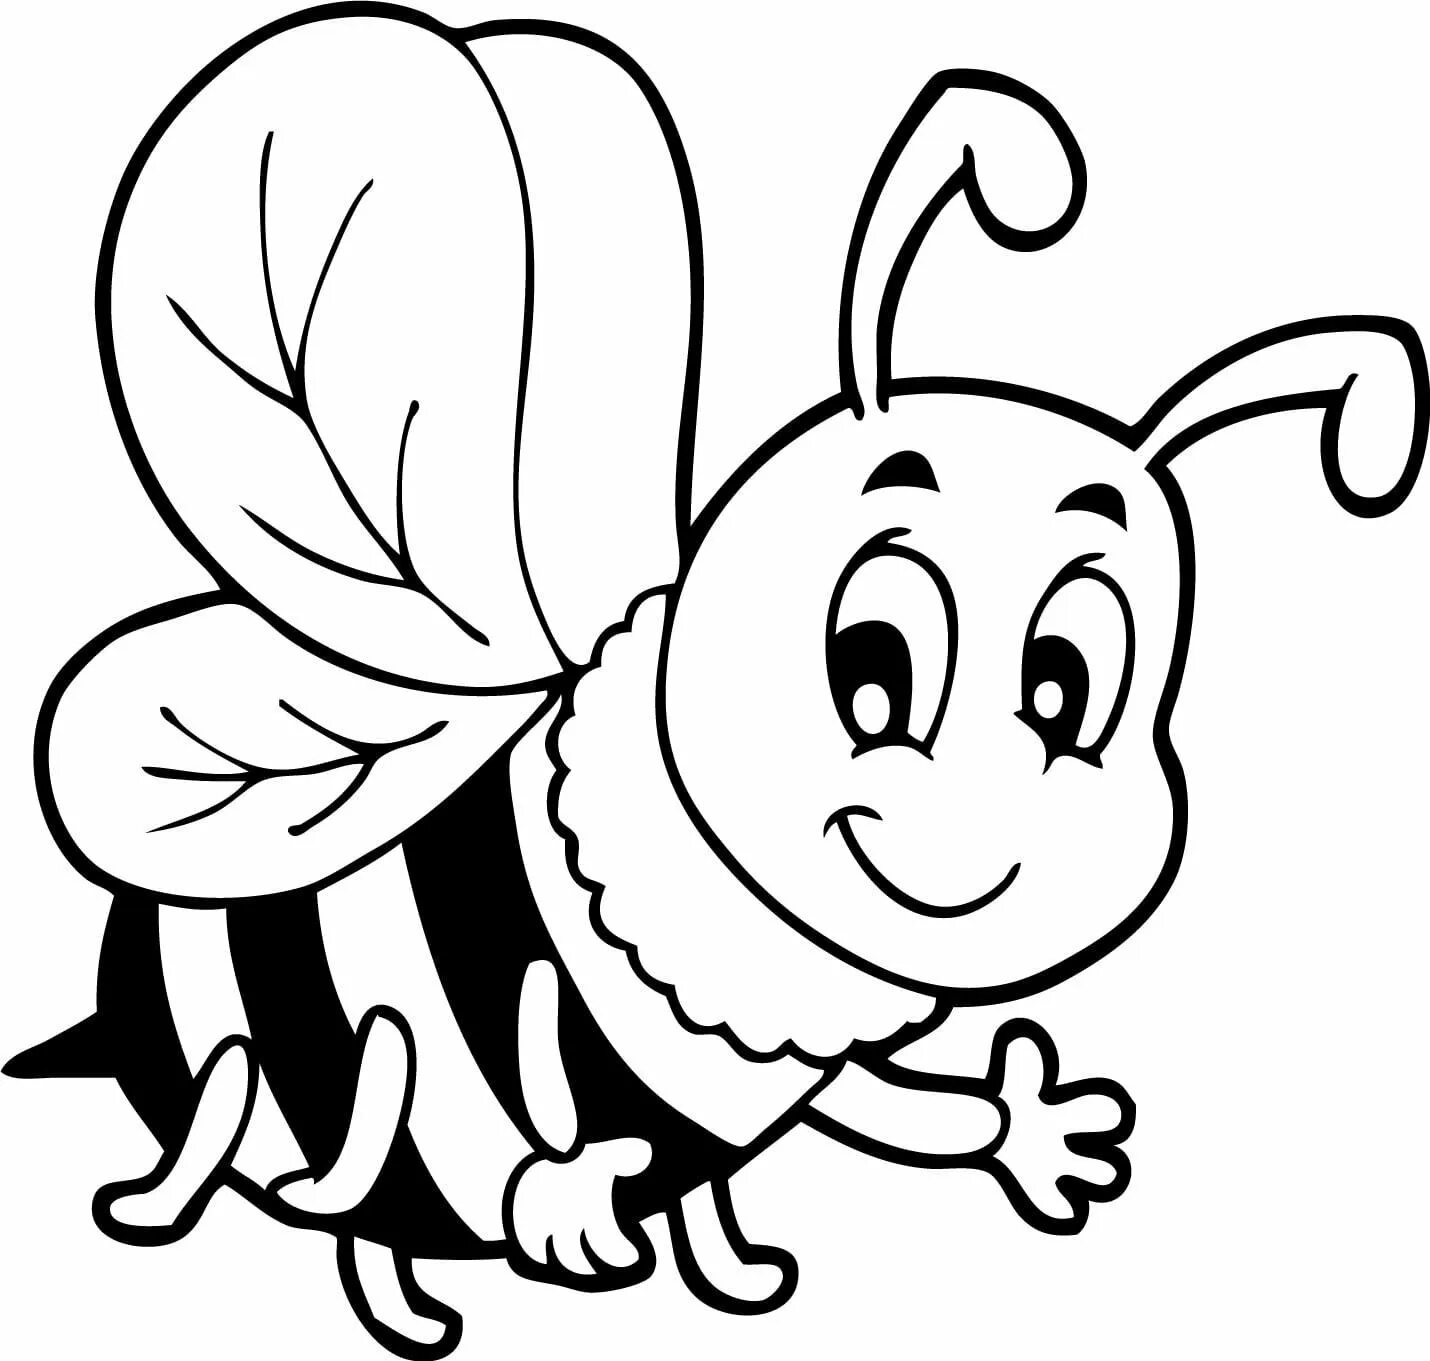 Пчела раскраска для детей. Раскраска пчёлка для детей. Пчелка раскраска для малышей. Пчелка картинка для детей раскраска. Раскраска пчела для детей